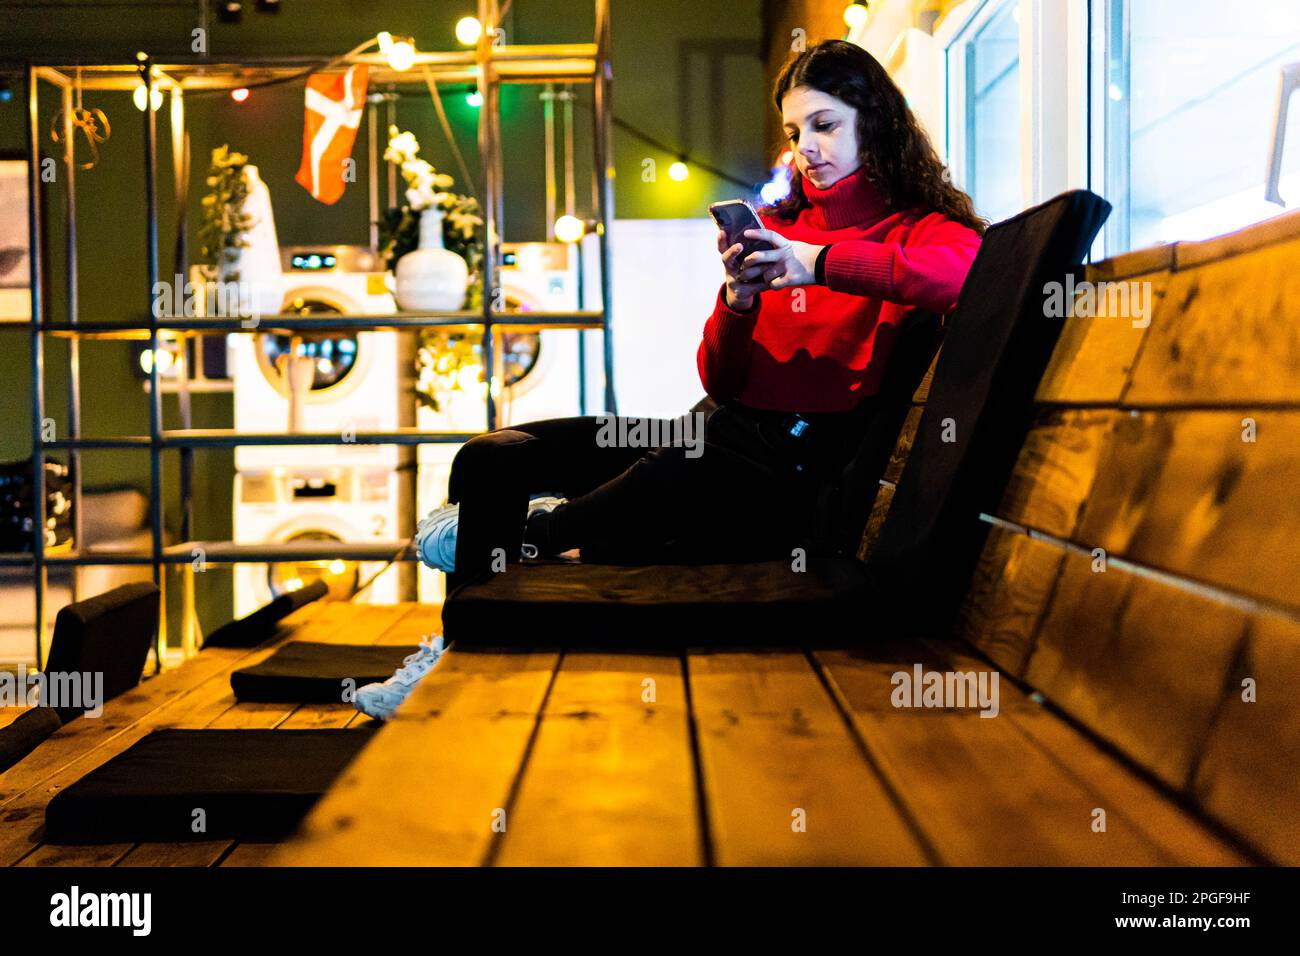 mujer sentada en bancos de madera en un hotel mirando el móvil Foto de stock